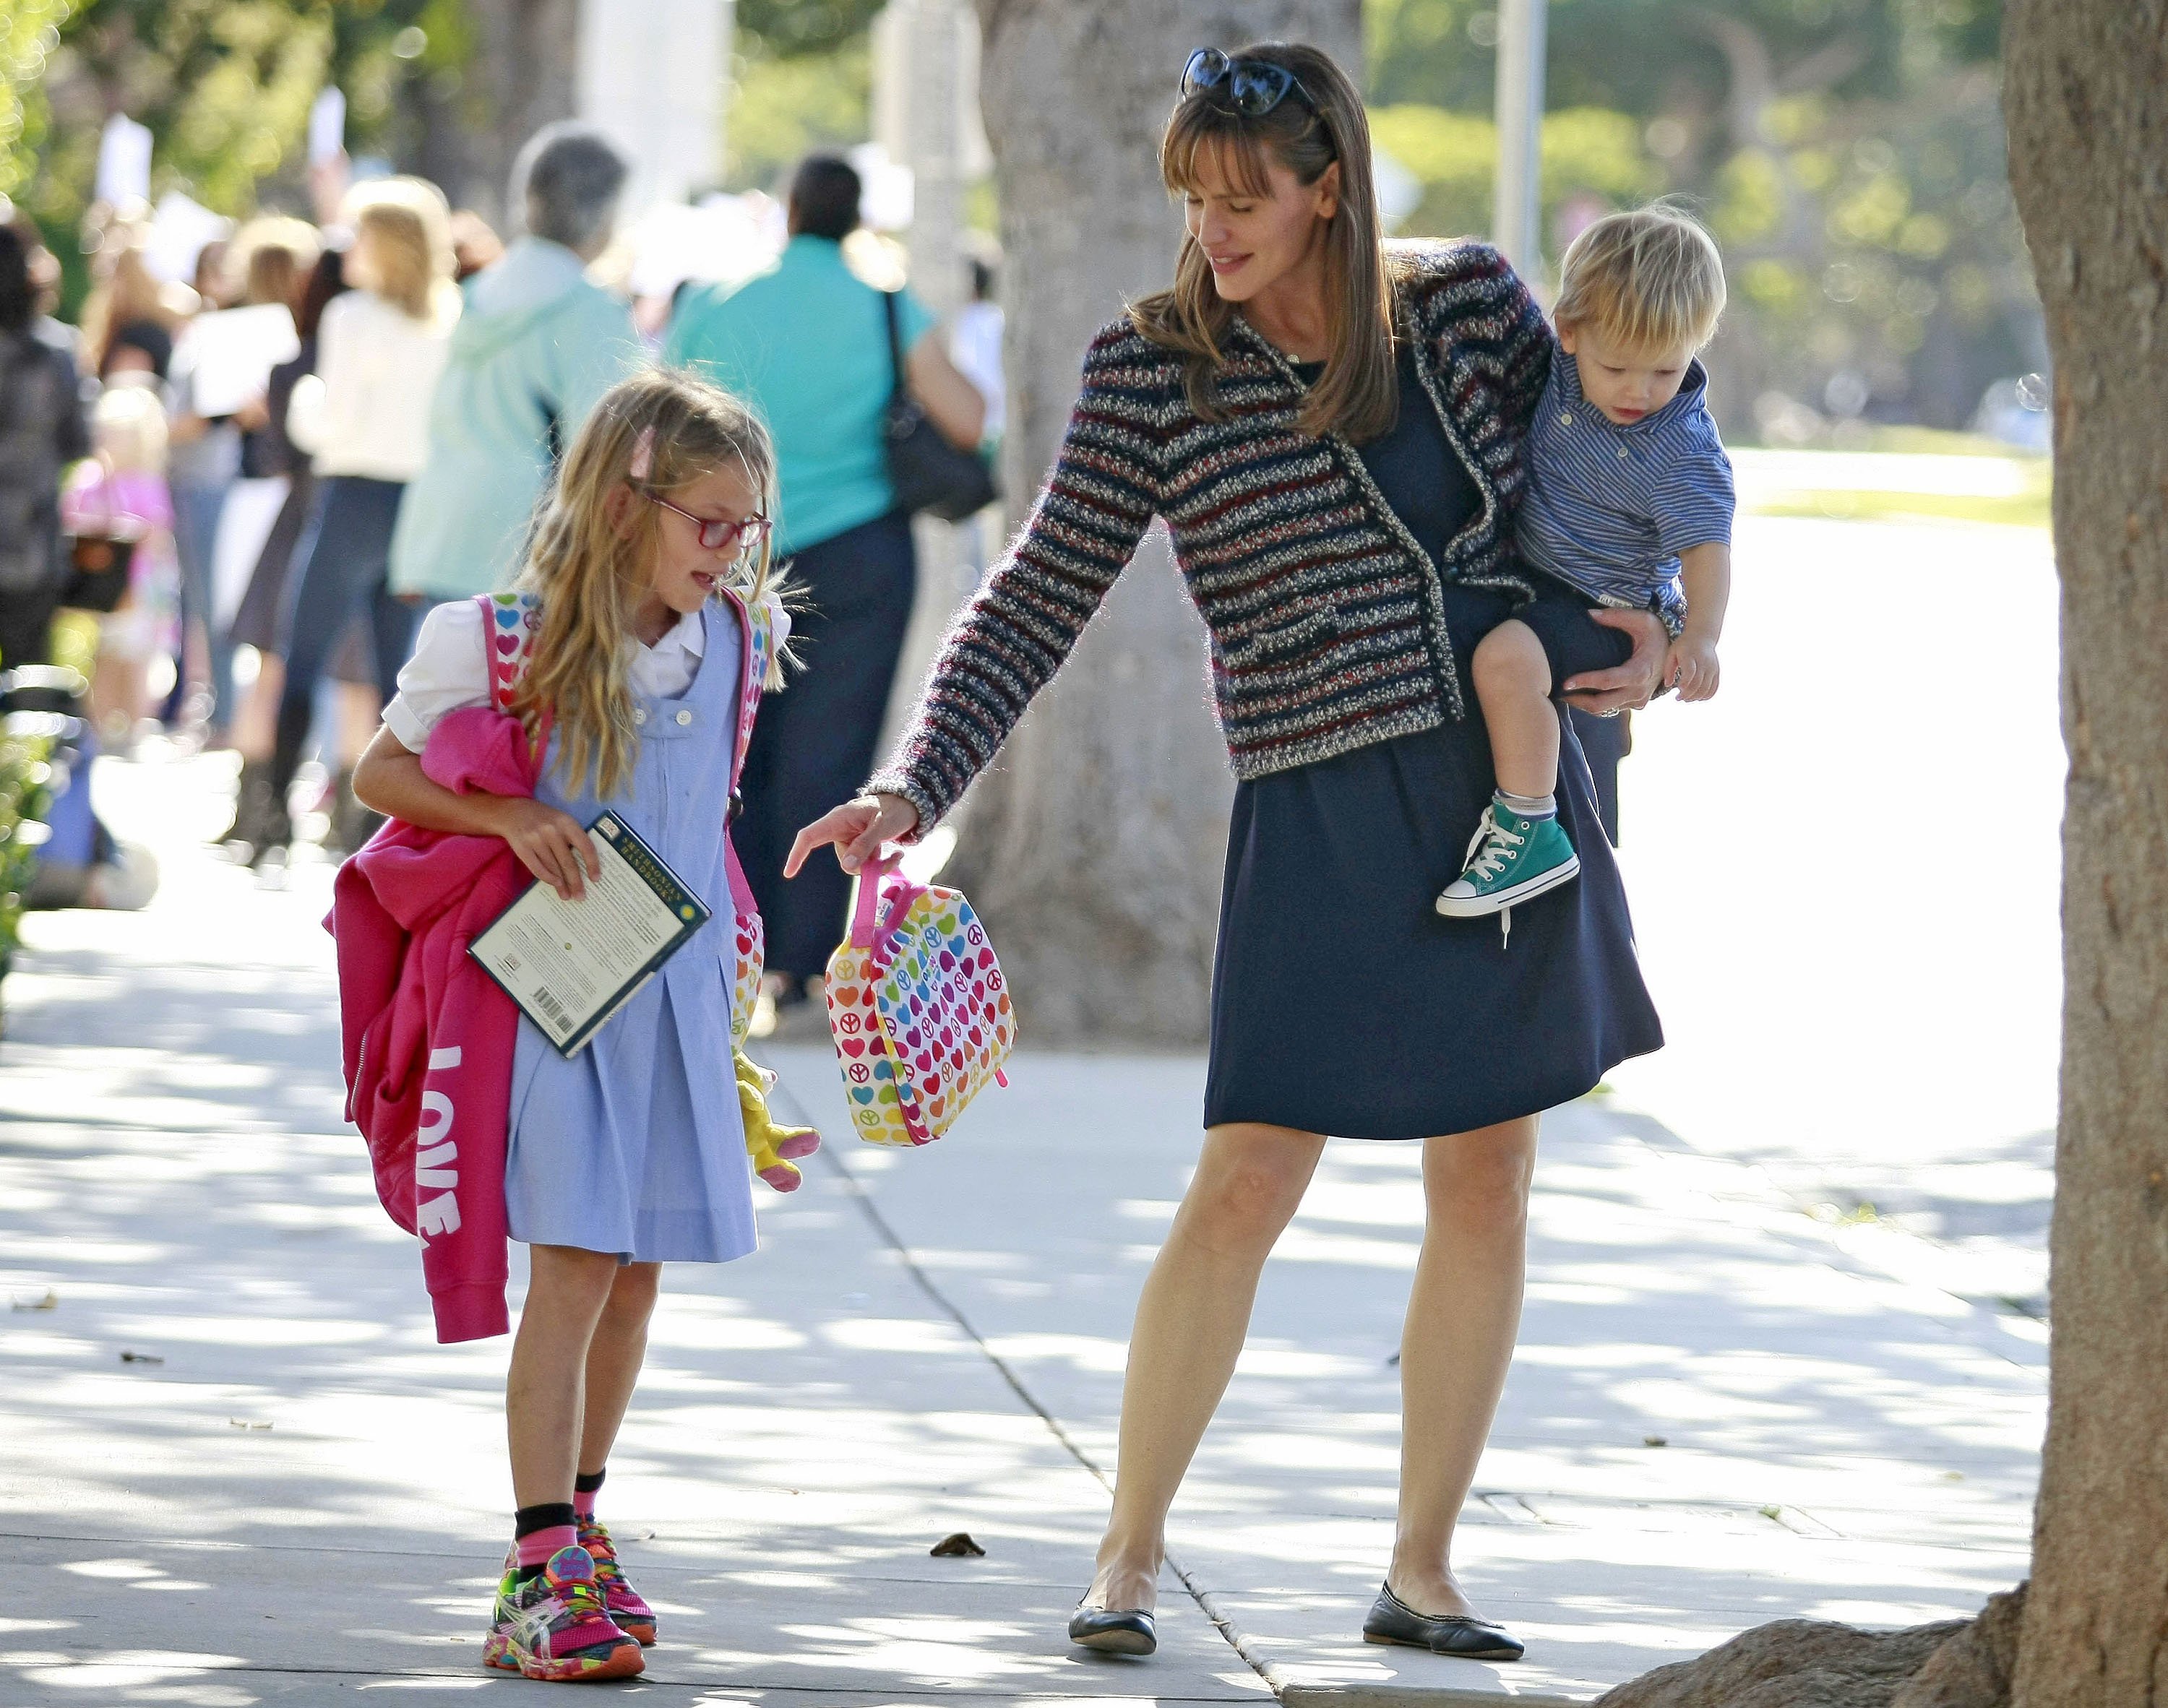 Jennifer Garner, son Samuel Affleck, and daughter Violet Affleck on September 26, 2013, in Los Angeles, California. | Source: Getty Images